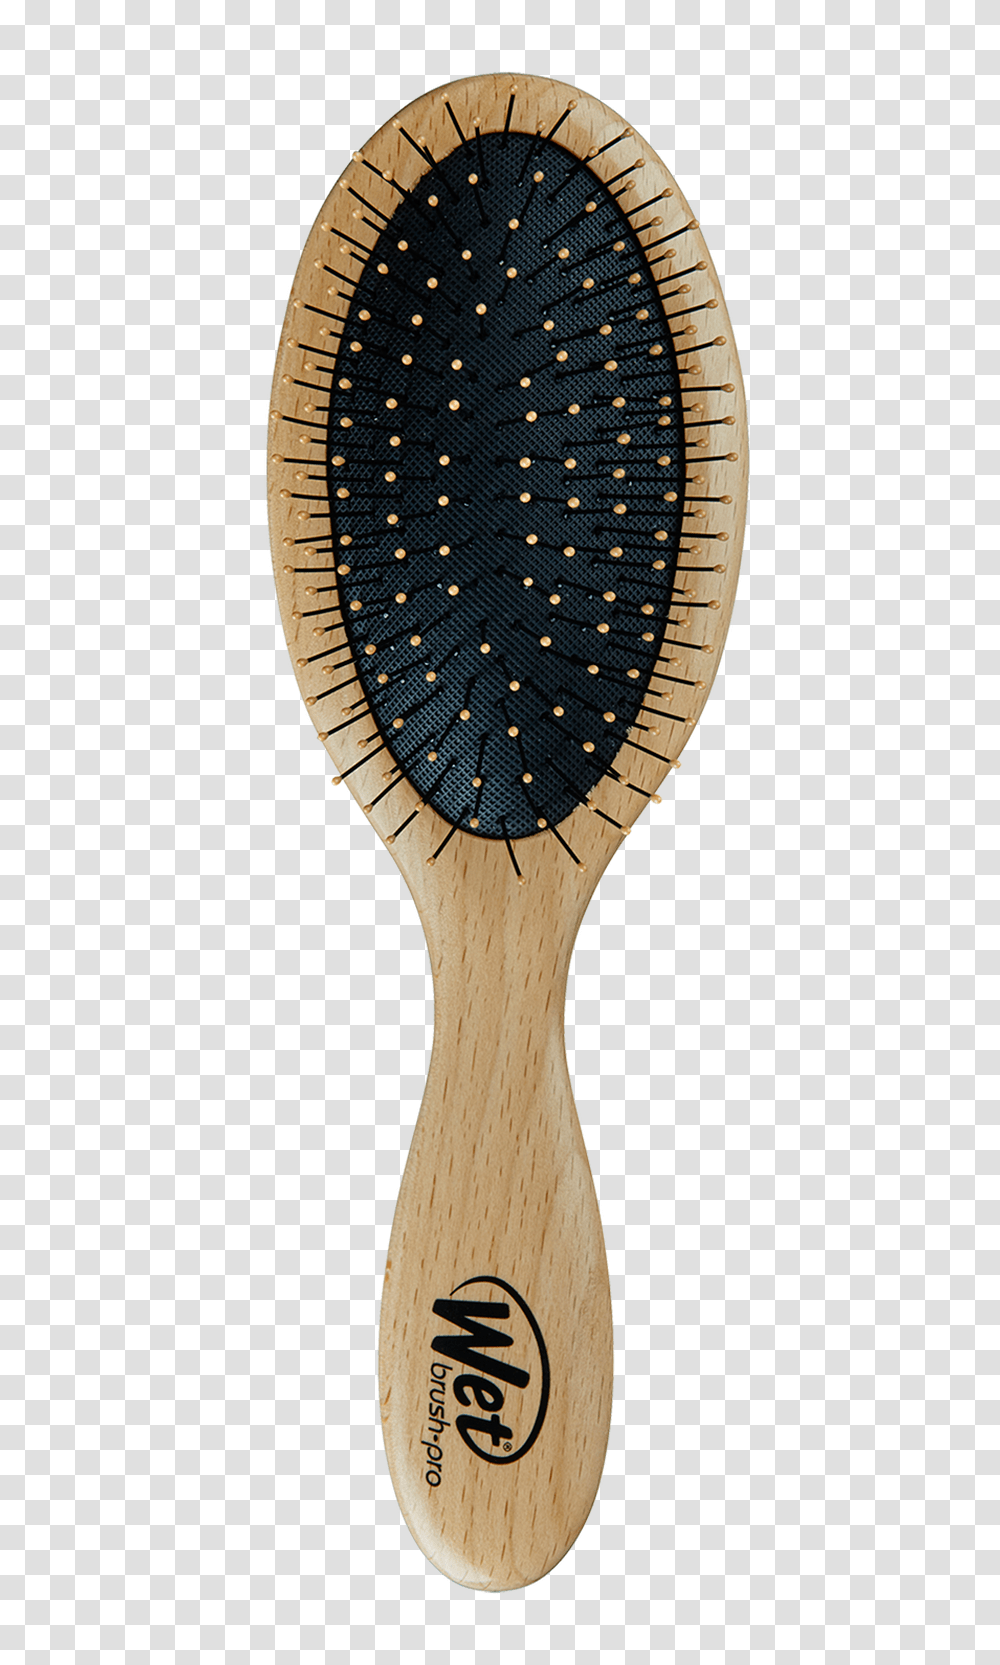 Hairbrush, Tool, Racket Transparent Png